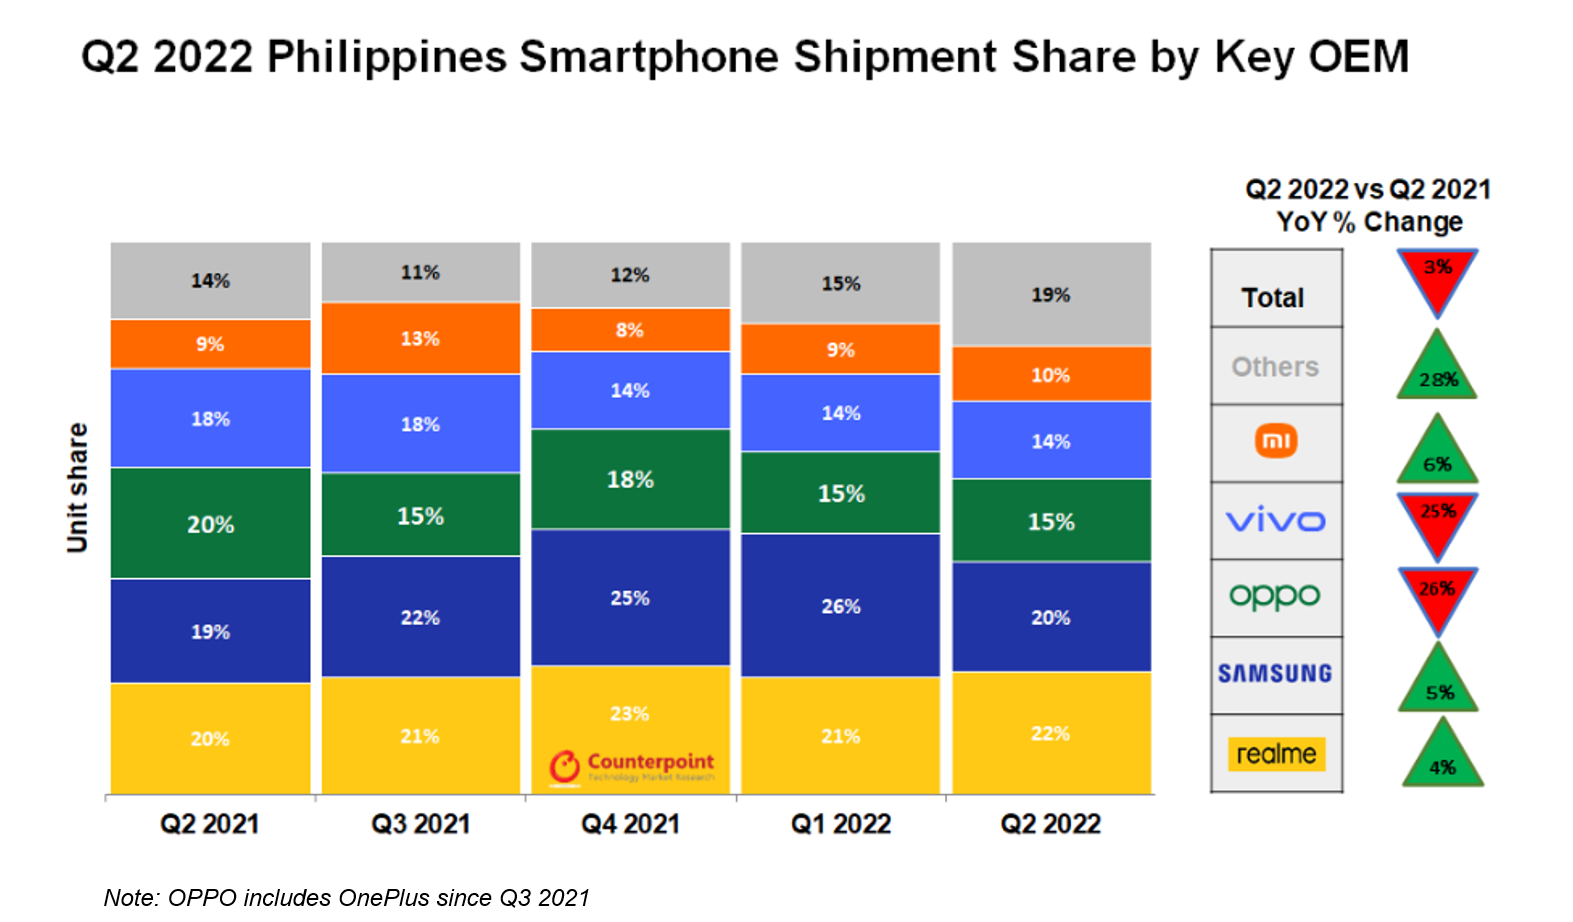 按主要OEM划分的菲律宾智能手机出货量份额